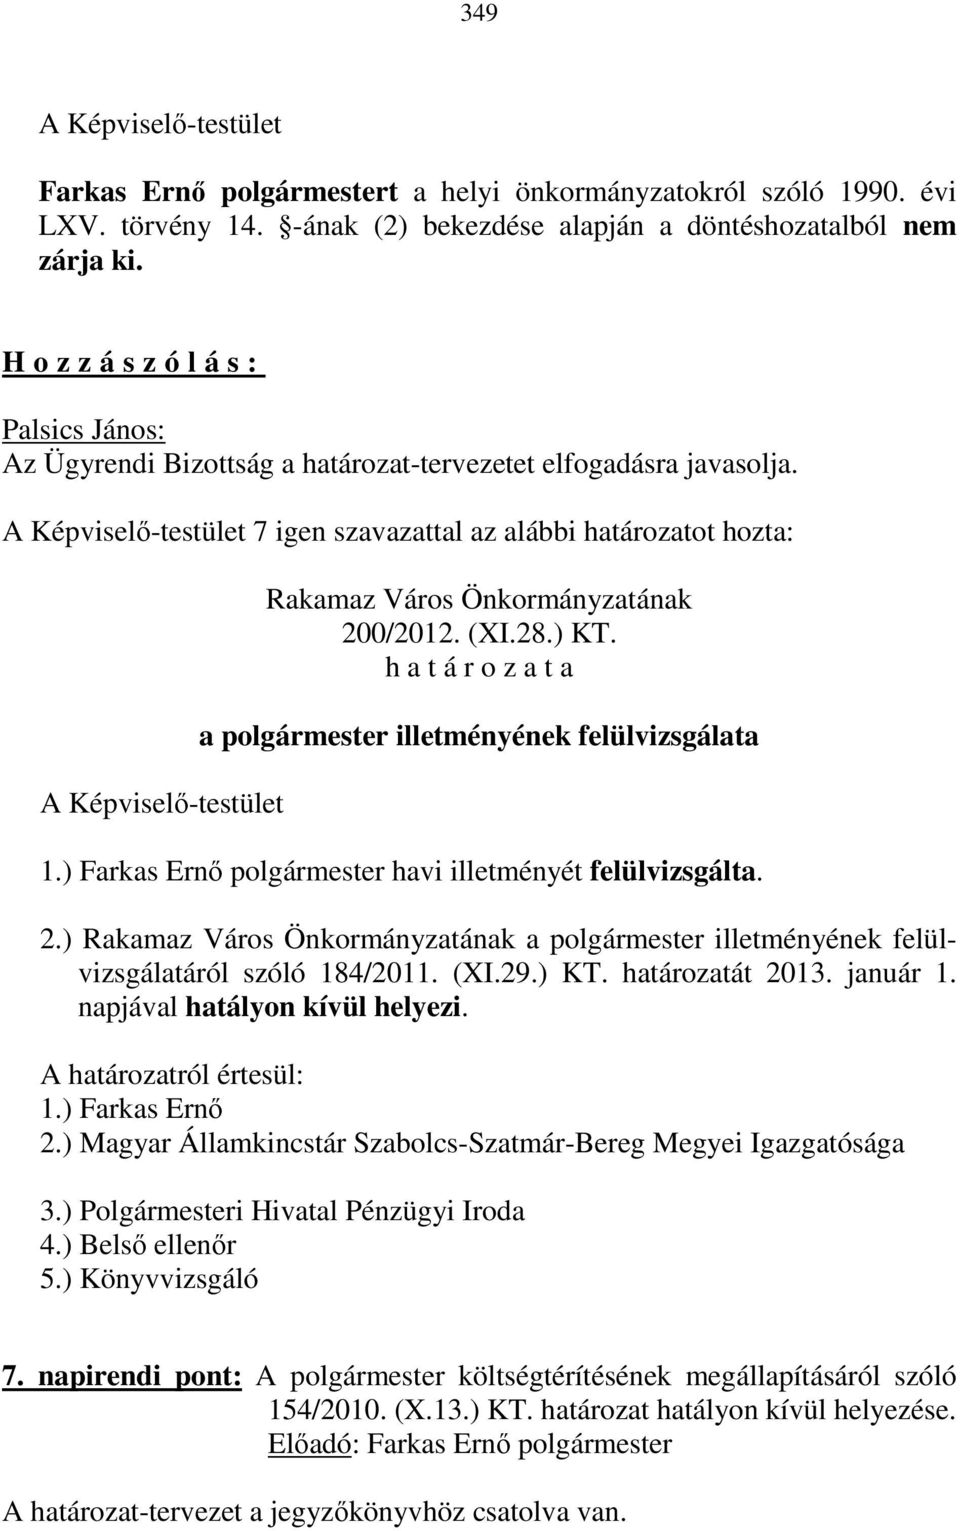 a polgármester illetményének felülvizsgálata 1.) Farkas Ernő polgármester havi illetményét felülvizsgálta. 2.) a polgármester illetményének felülvizsgálatáról szóló 184/2011. (XI.29.) KT.